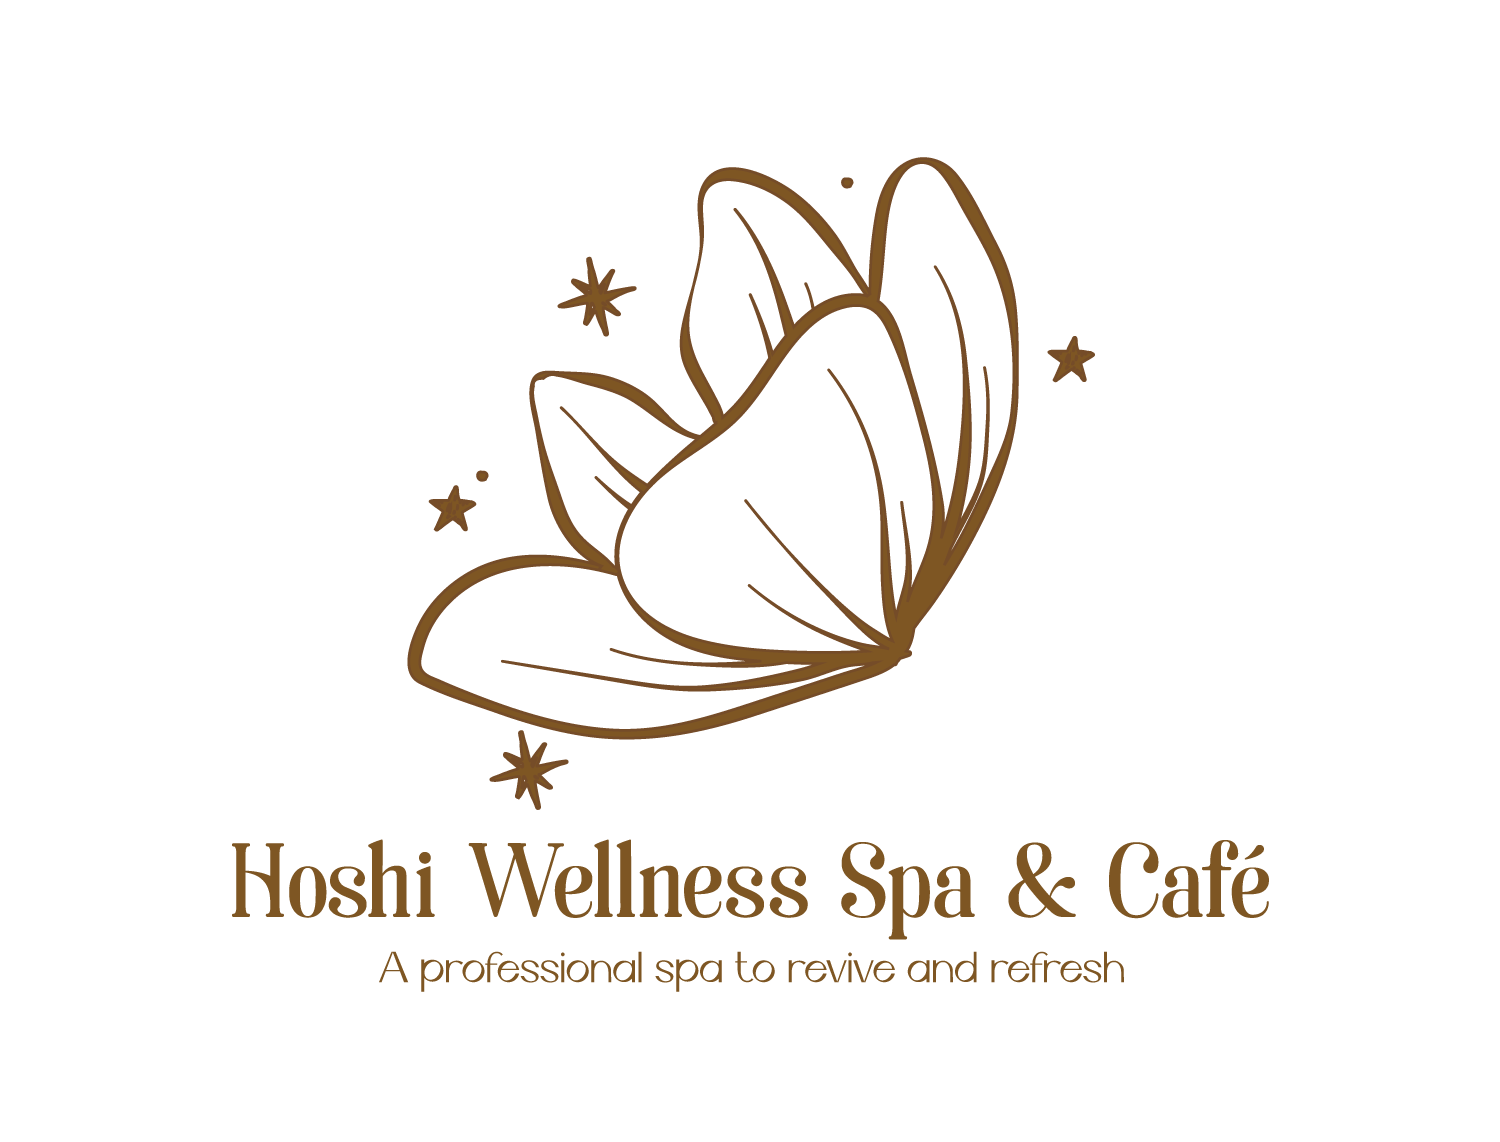 Hoshi Wellness Spa & Cafe